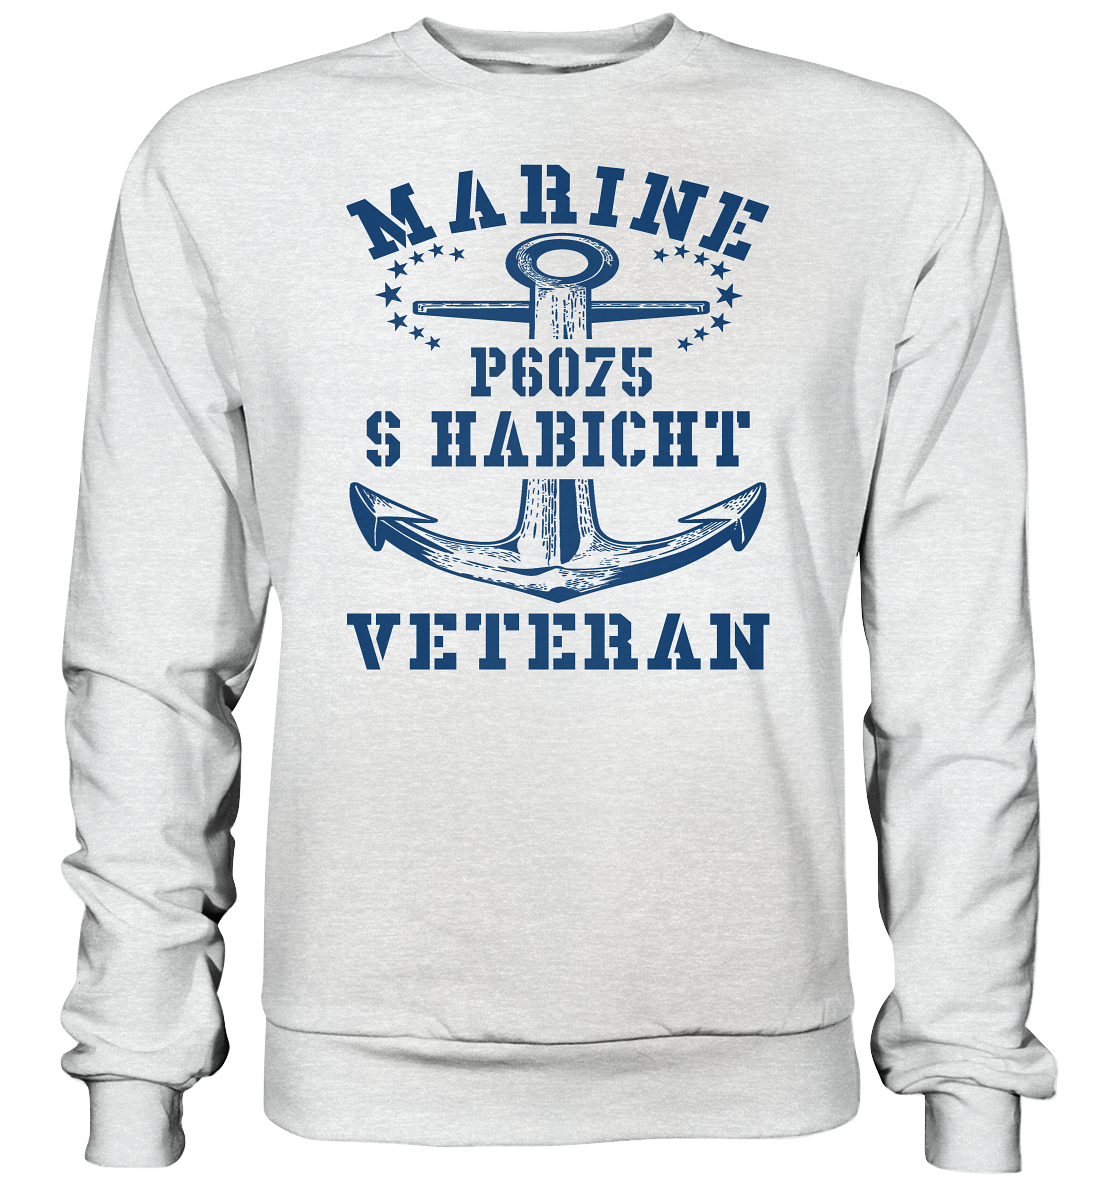 P6075 S HABICHT Marine Veteran - Premium Sweatshirt